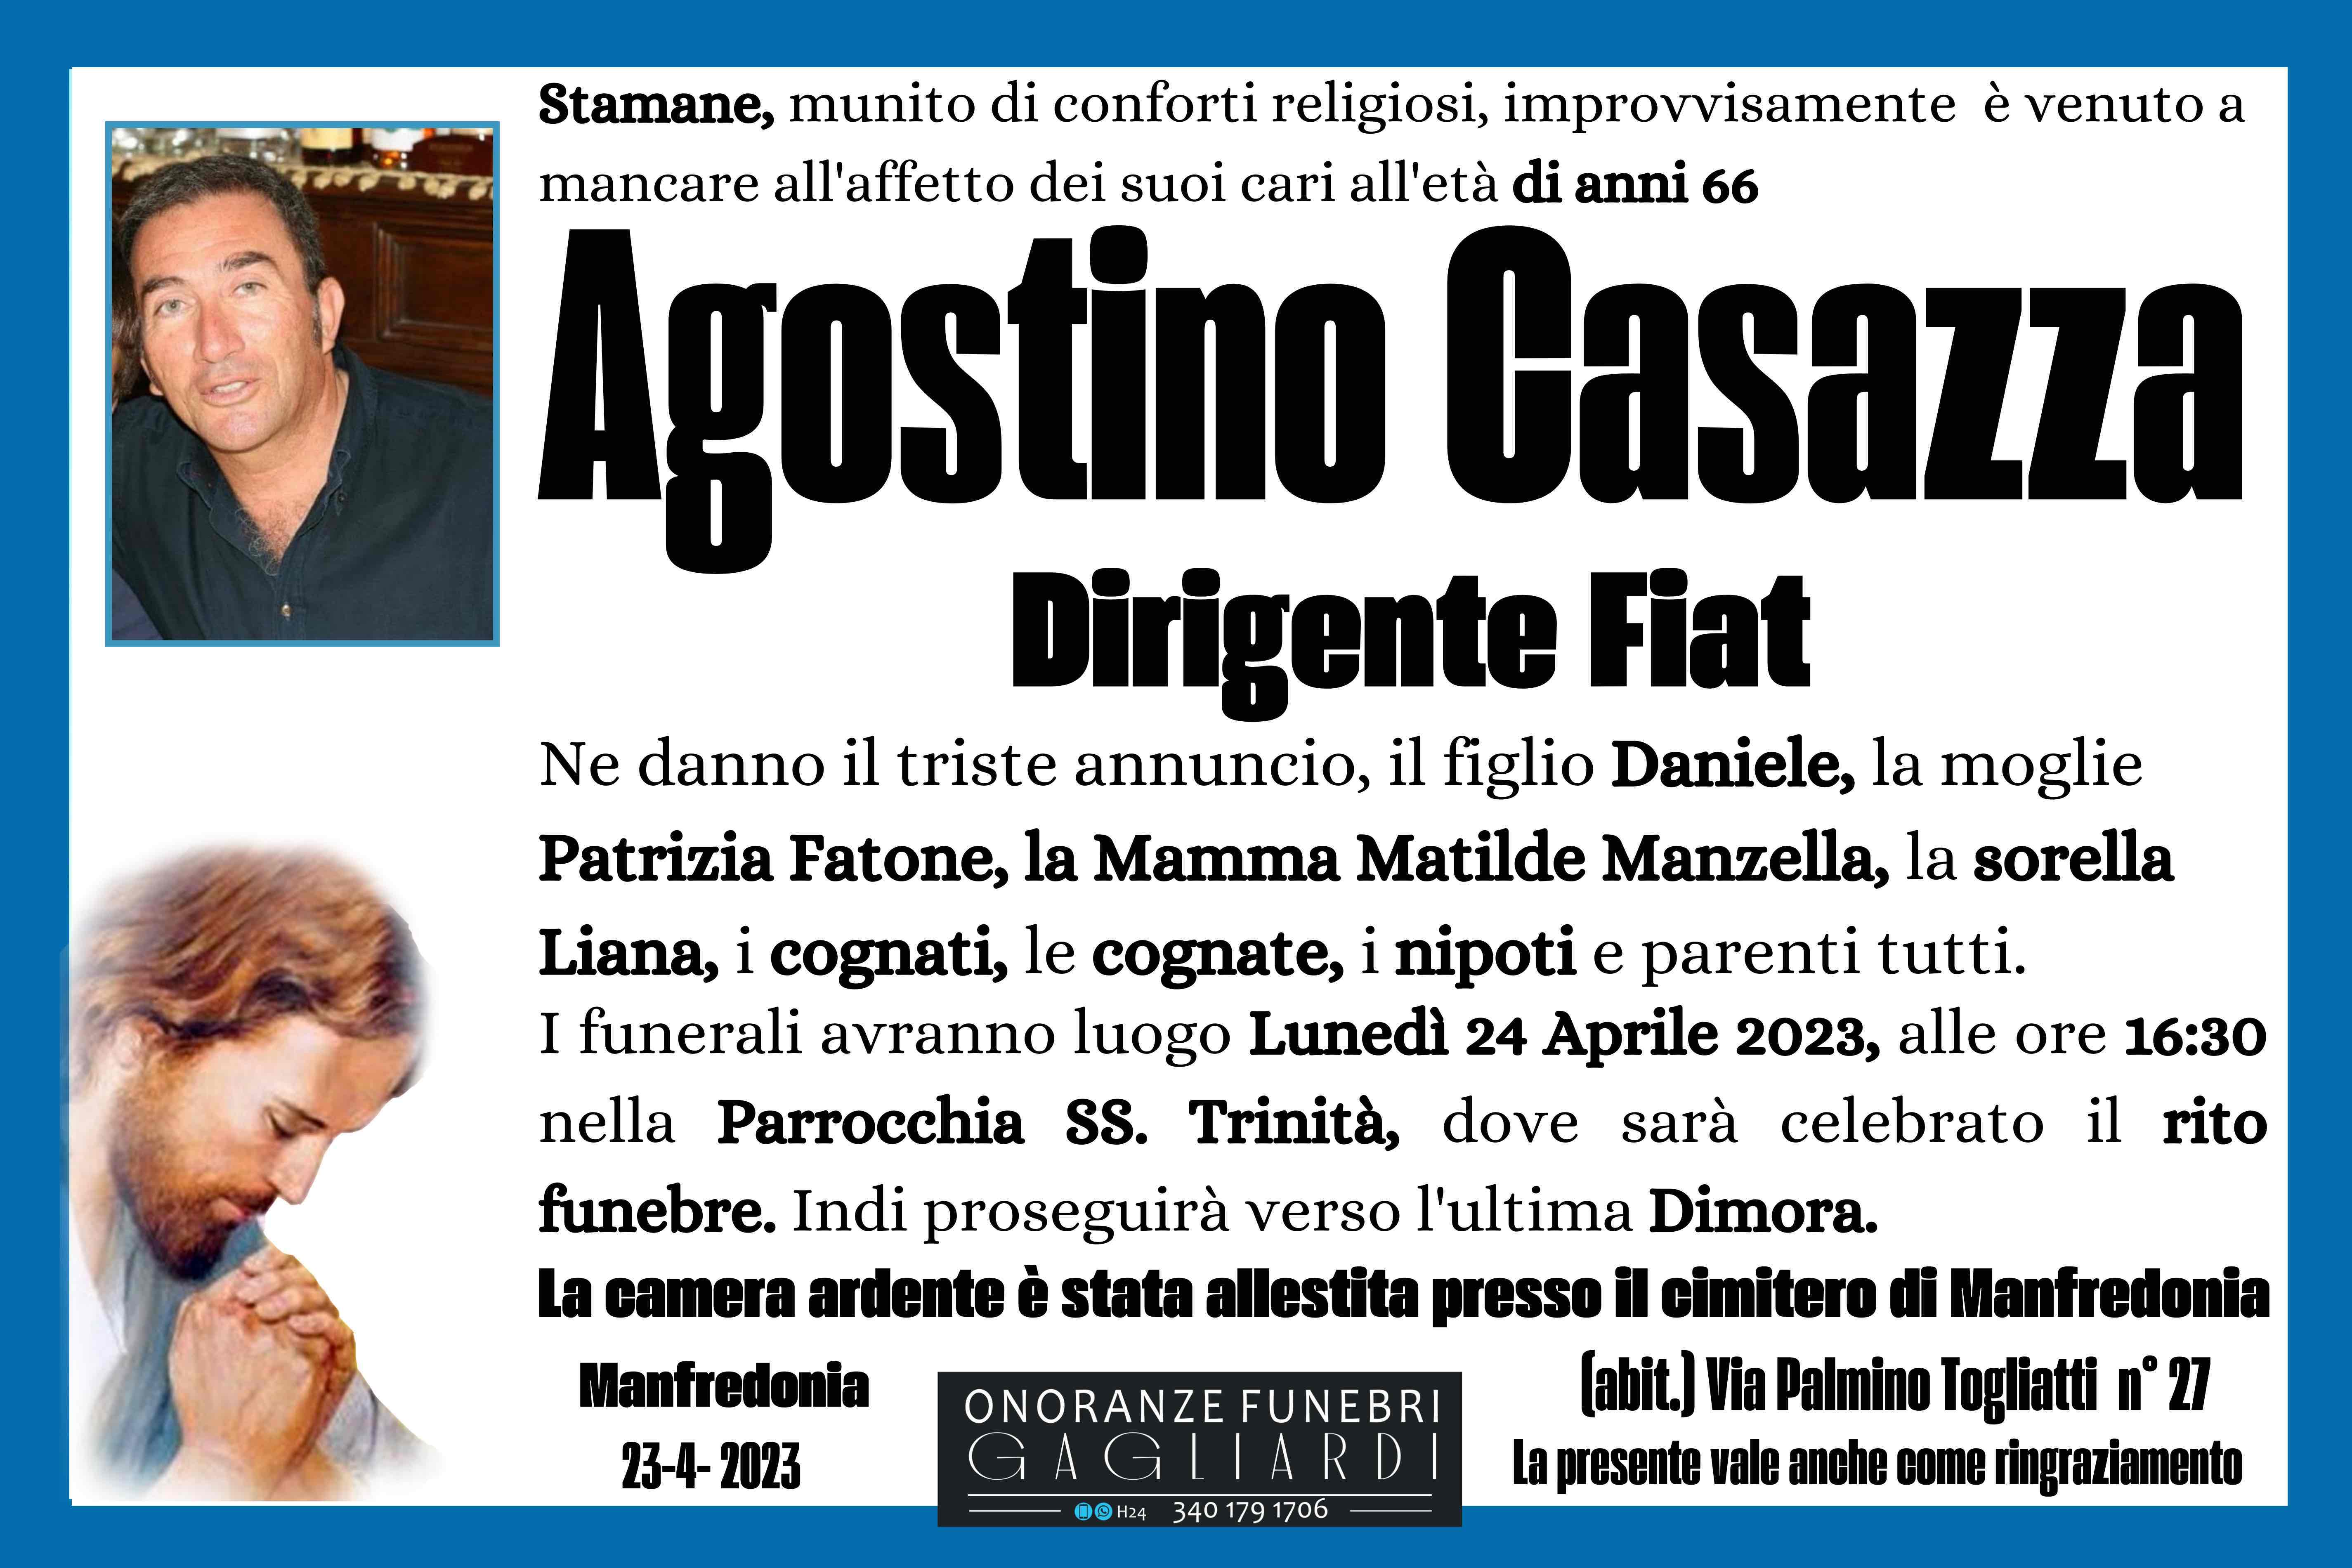 Agostino Casazza